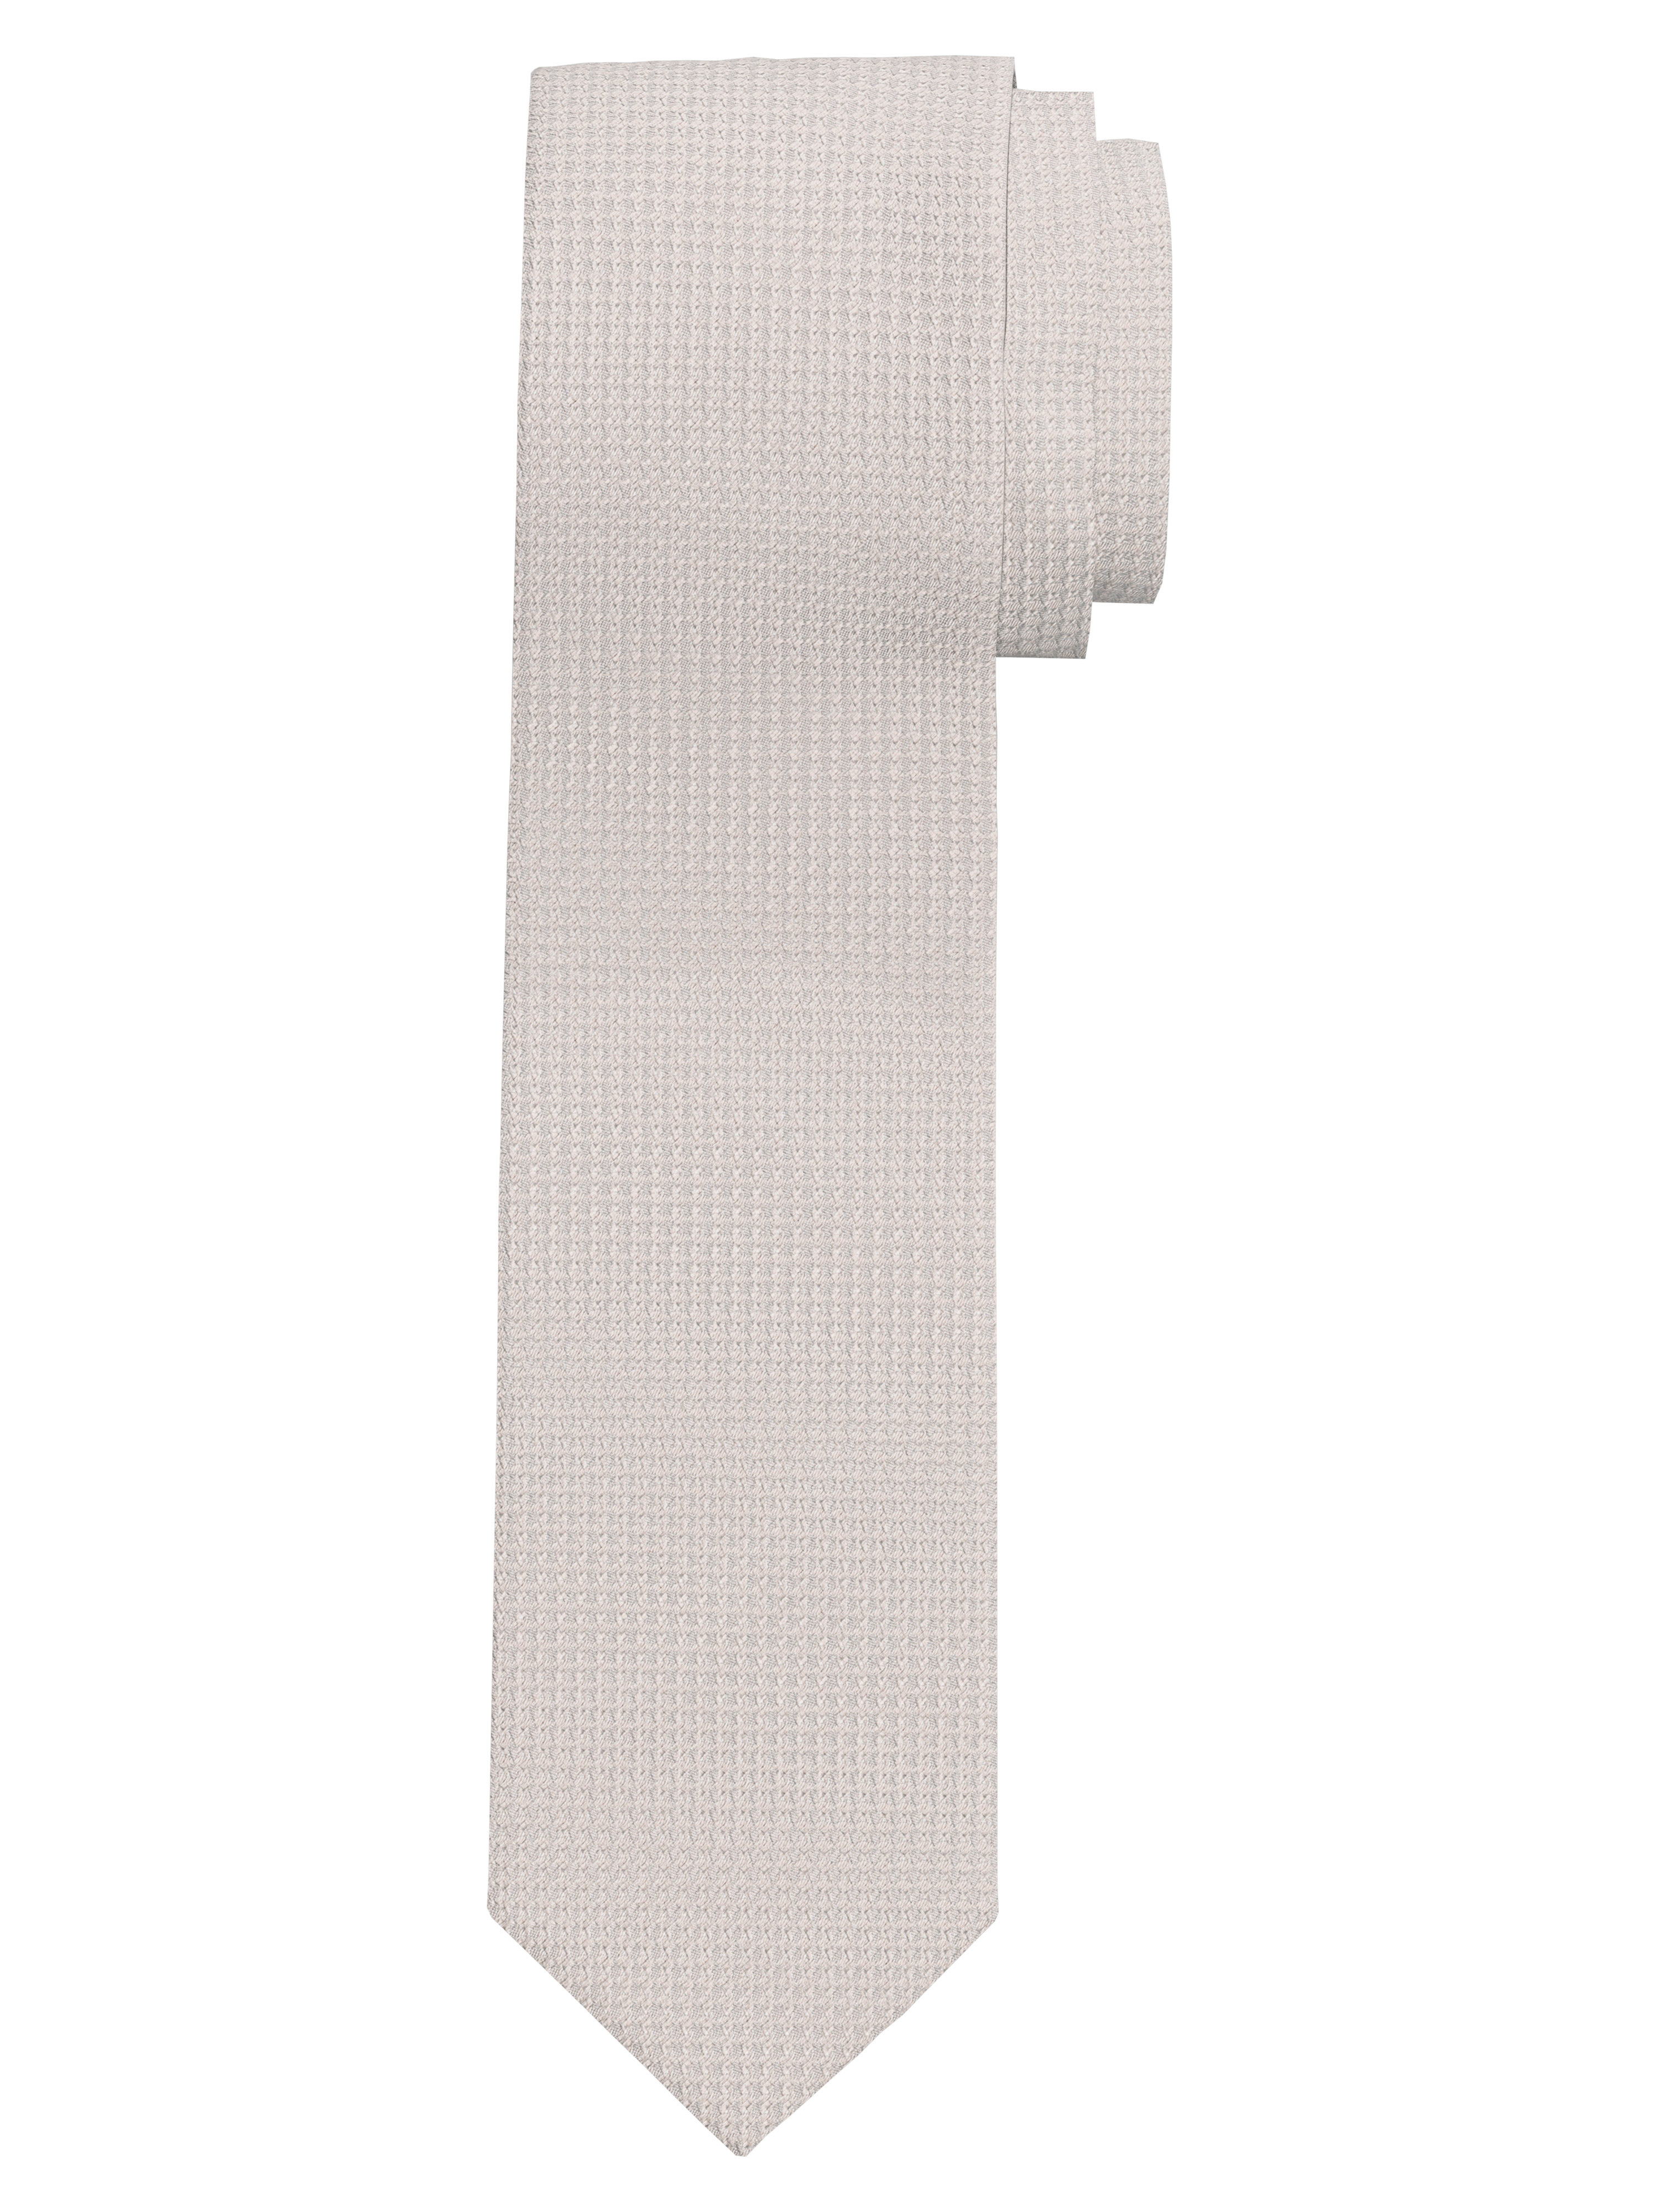 OLYMP Krawatte, slim 6,5 cm | Hellrosé - 1782003101